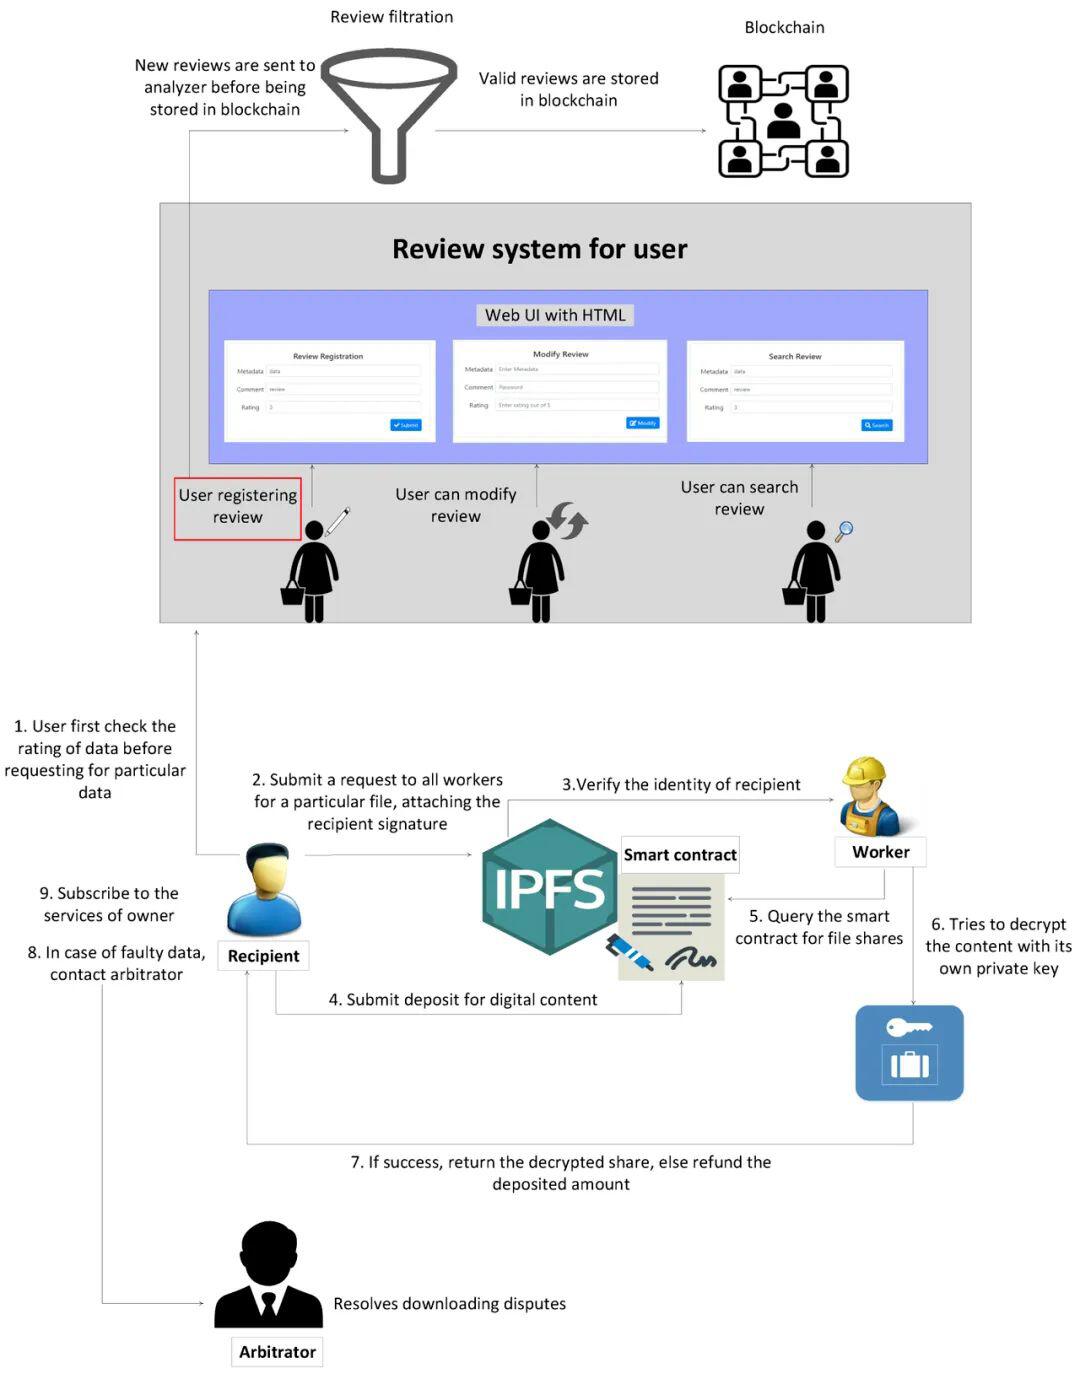 一文读懂应用| IPFS 如何做到数据安全共享和审查？